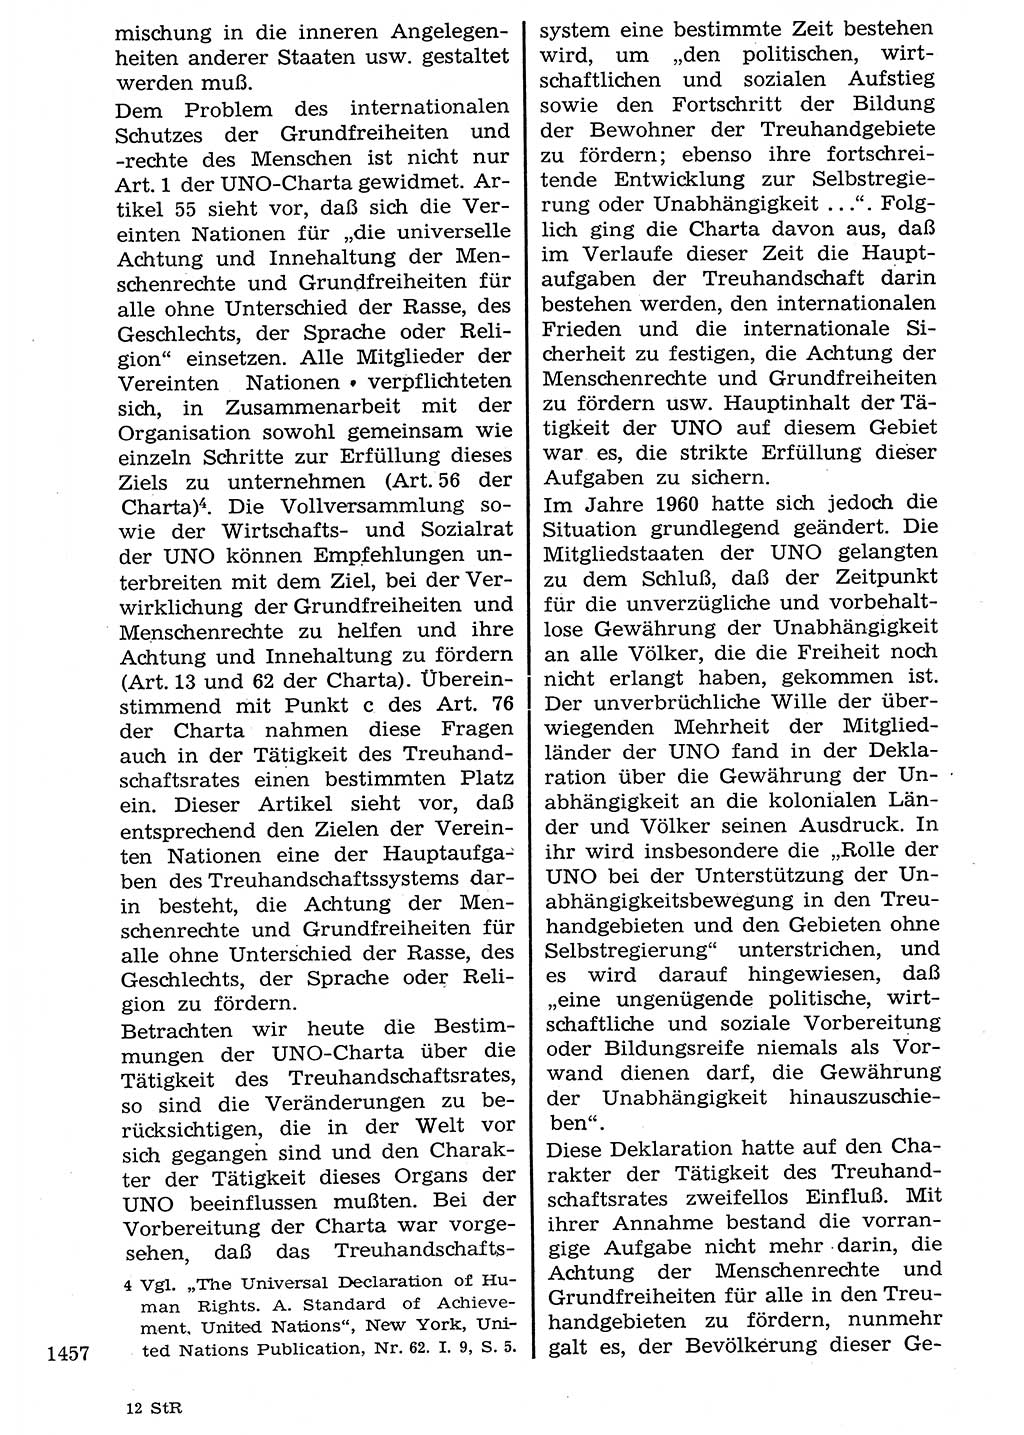 Staat und Recht (StuR), 17. Jahrgang [Deutsche Demokratische Republik (DDR)] 1968, Seite 1457 (StuR DDR 1968, S. 1457)